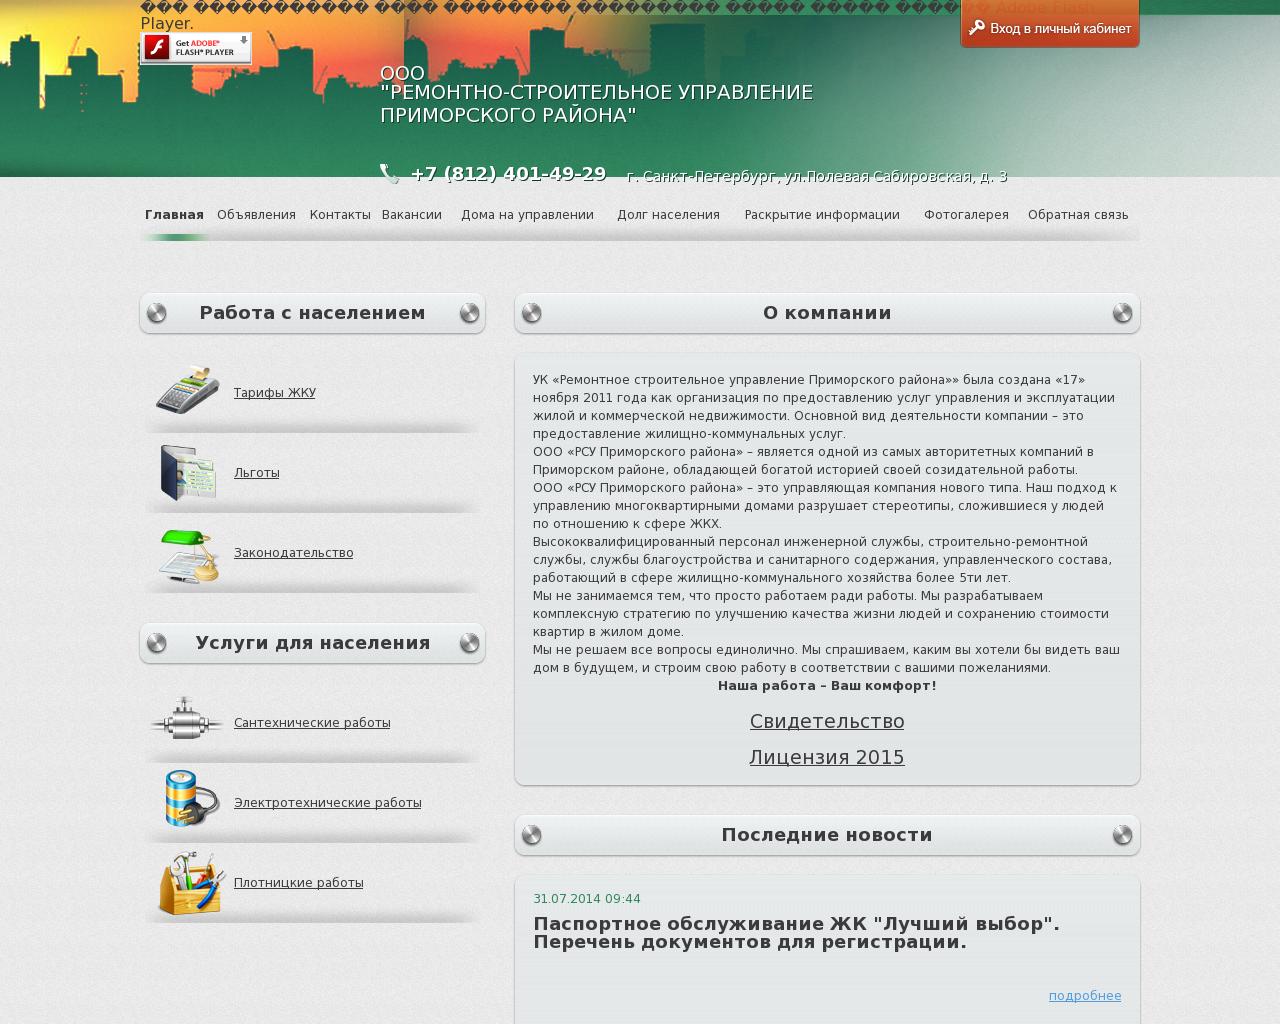 Изображение сайта ukomrsu.ru в разрешении 1280x1024